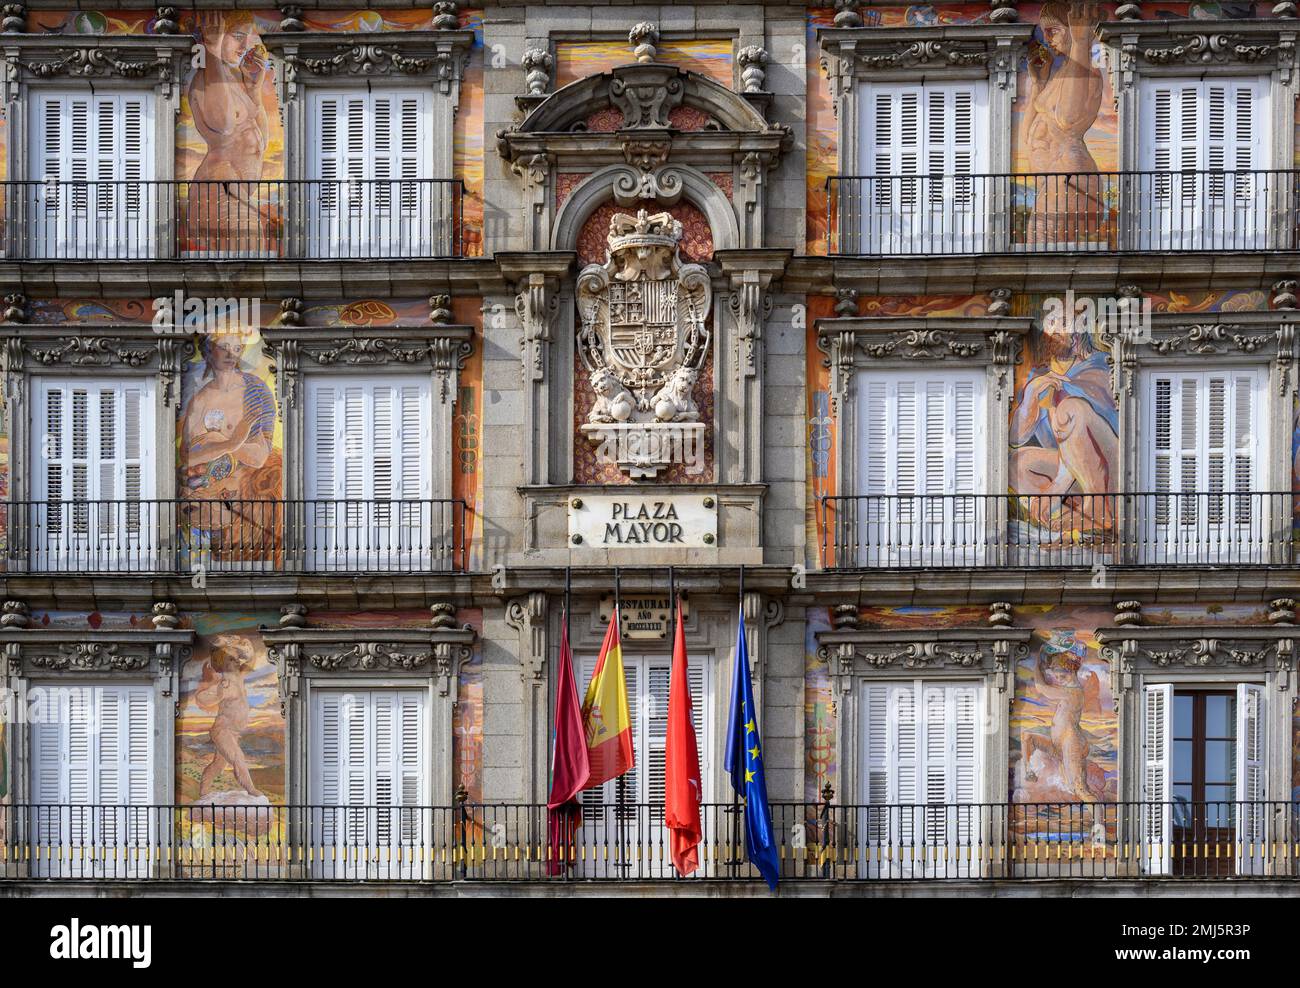 Wandgemälde und architektonische Details zum Gebäude an der Plaza Mayor in Madrid Centro, Spanien. Stockfoto